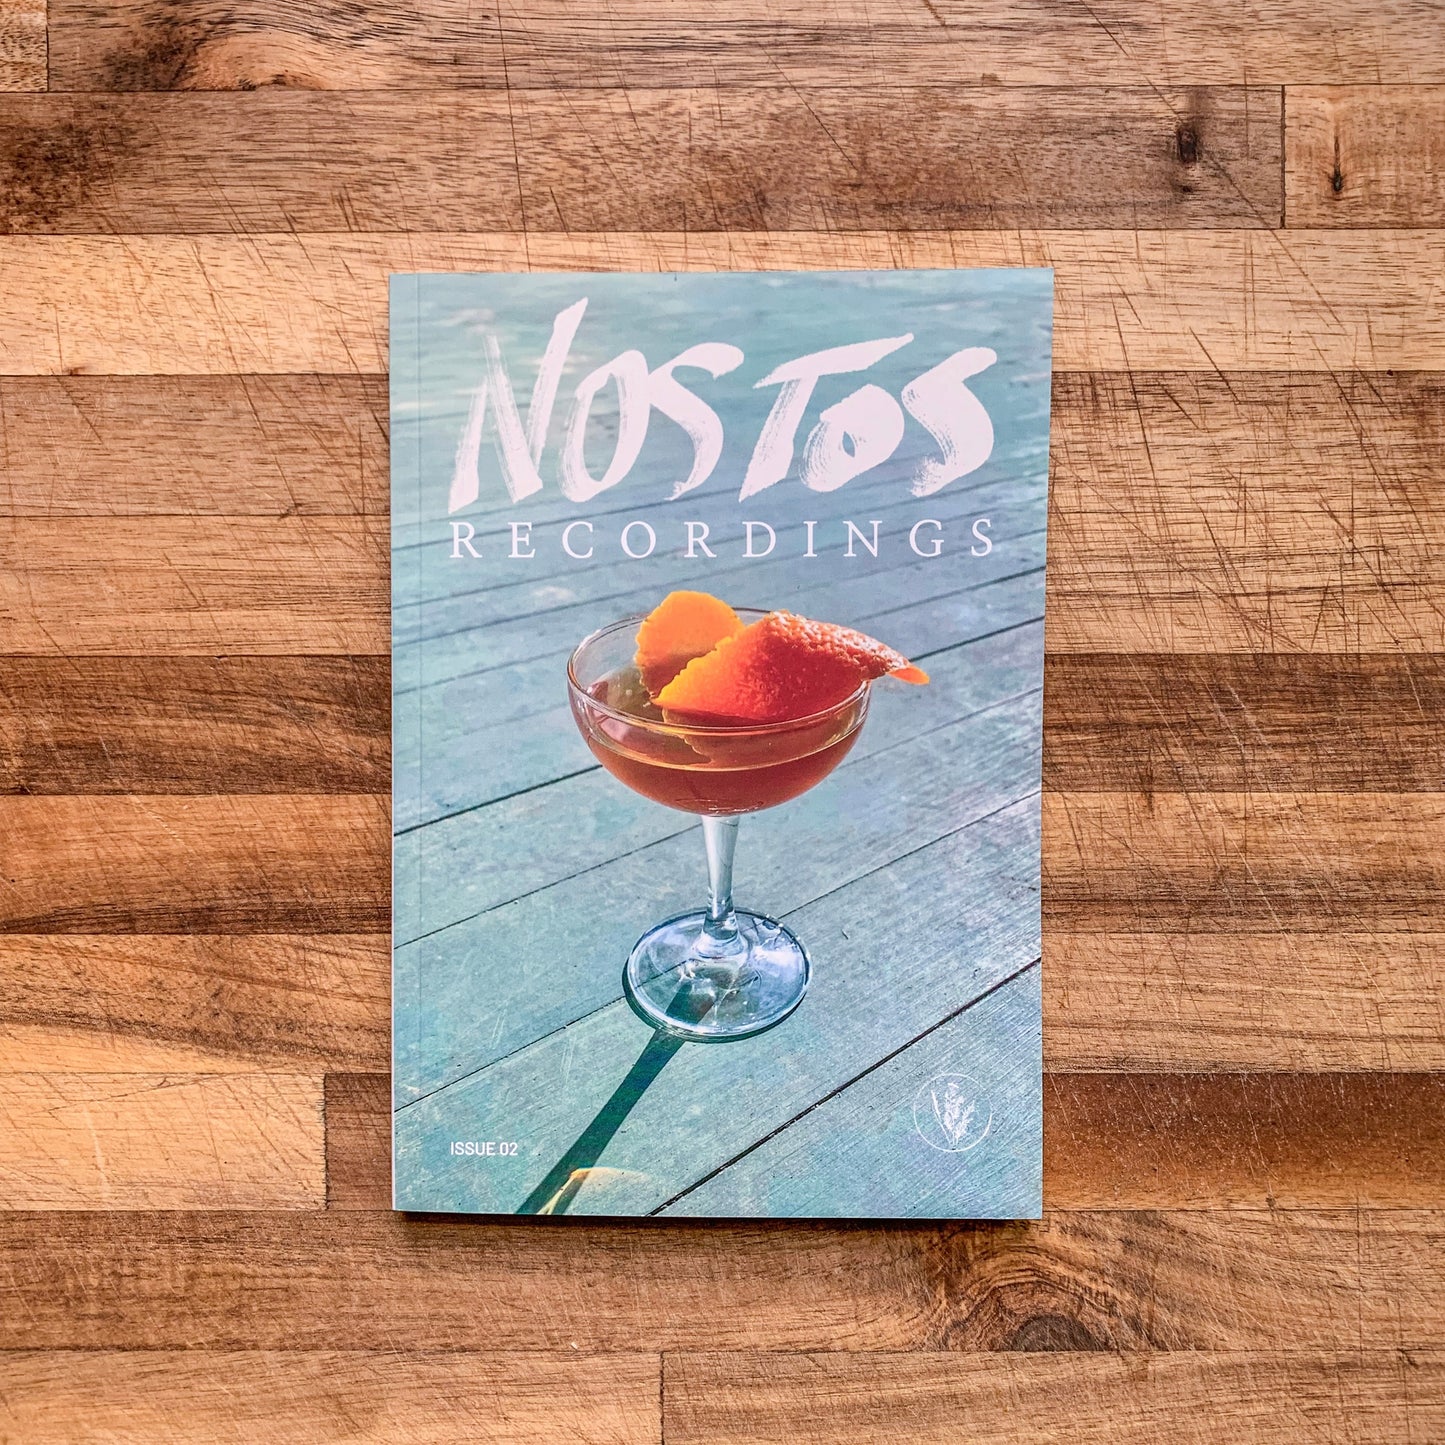 Nostos Recordings: Issue 02